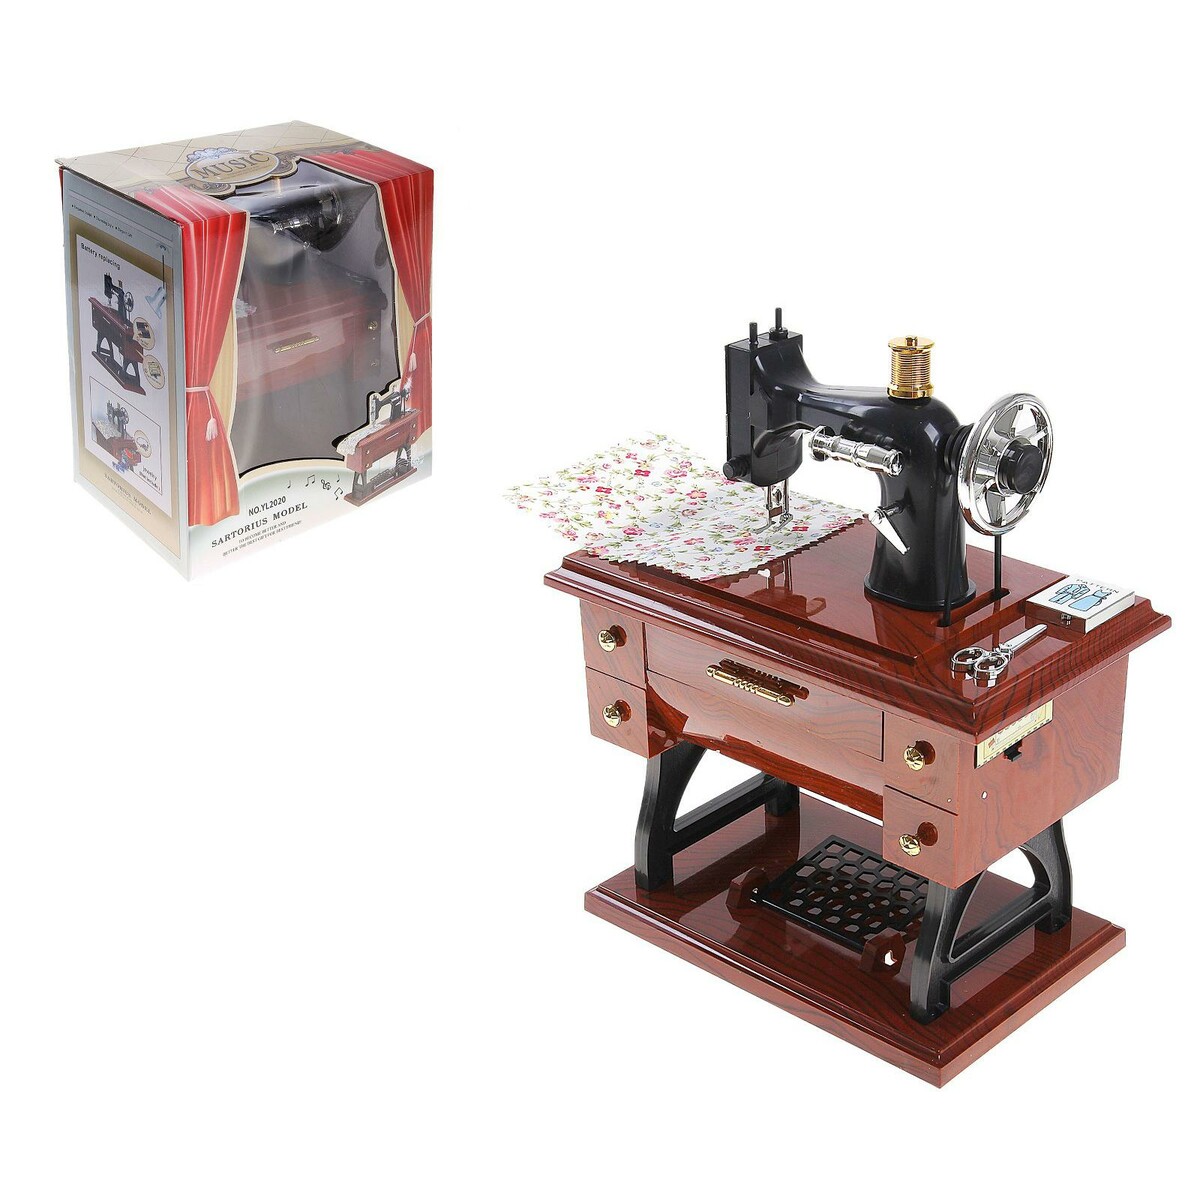 Машинка швейная шкатулка veld co швейная машинка 119146